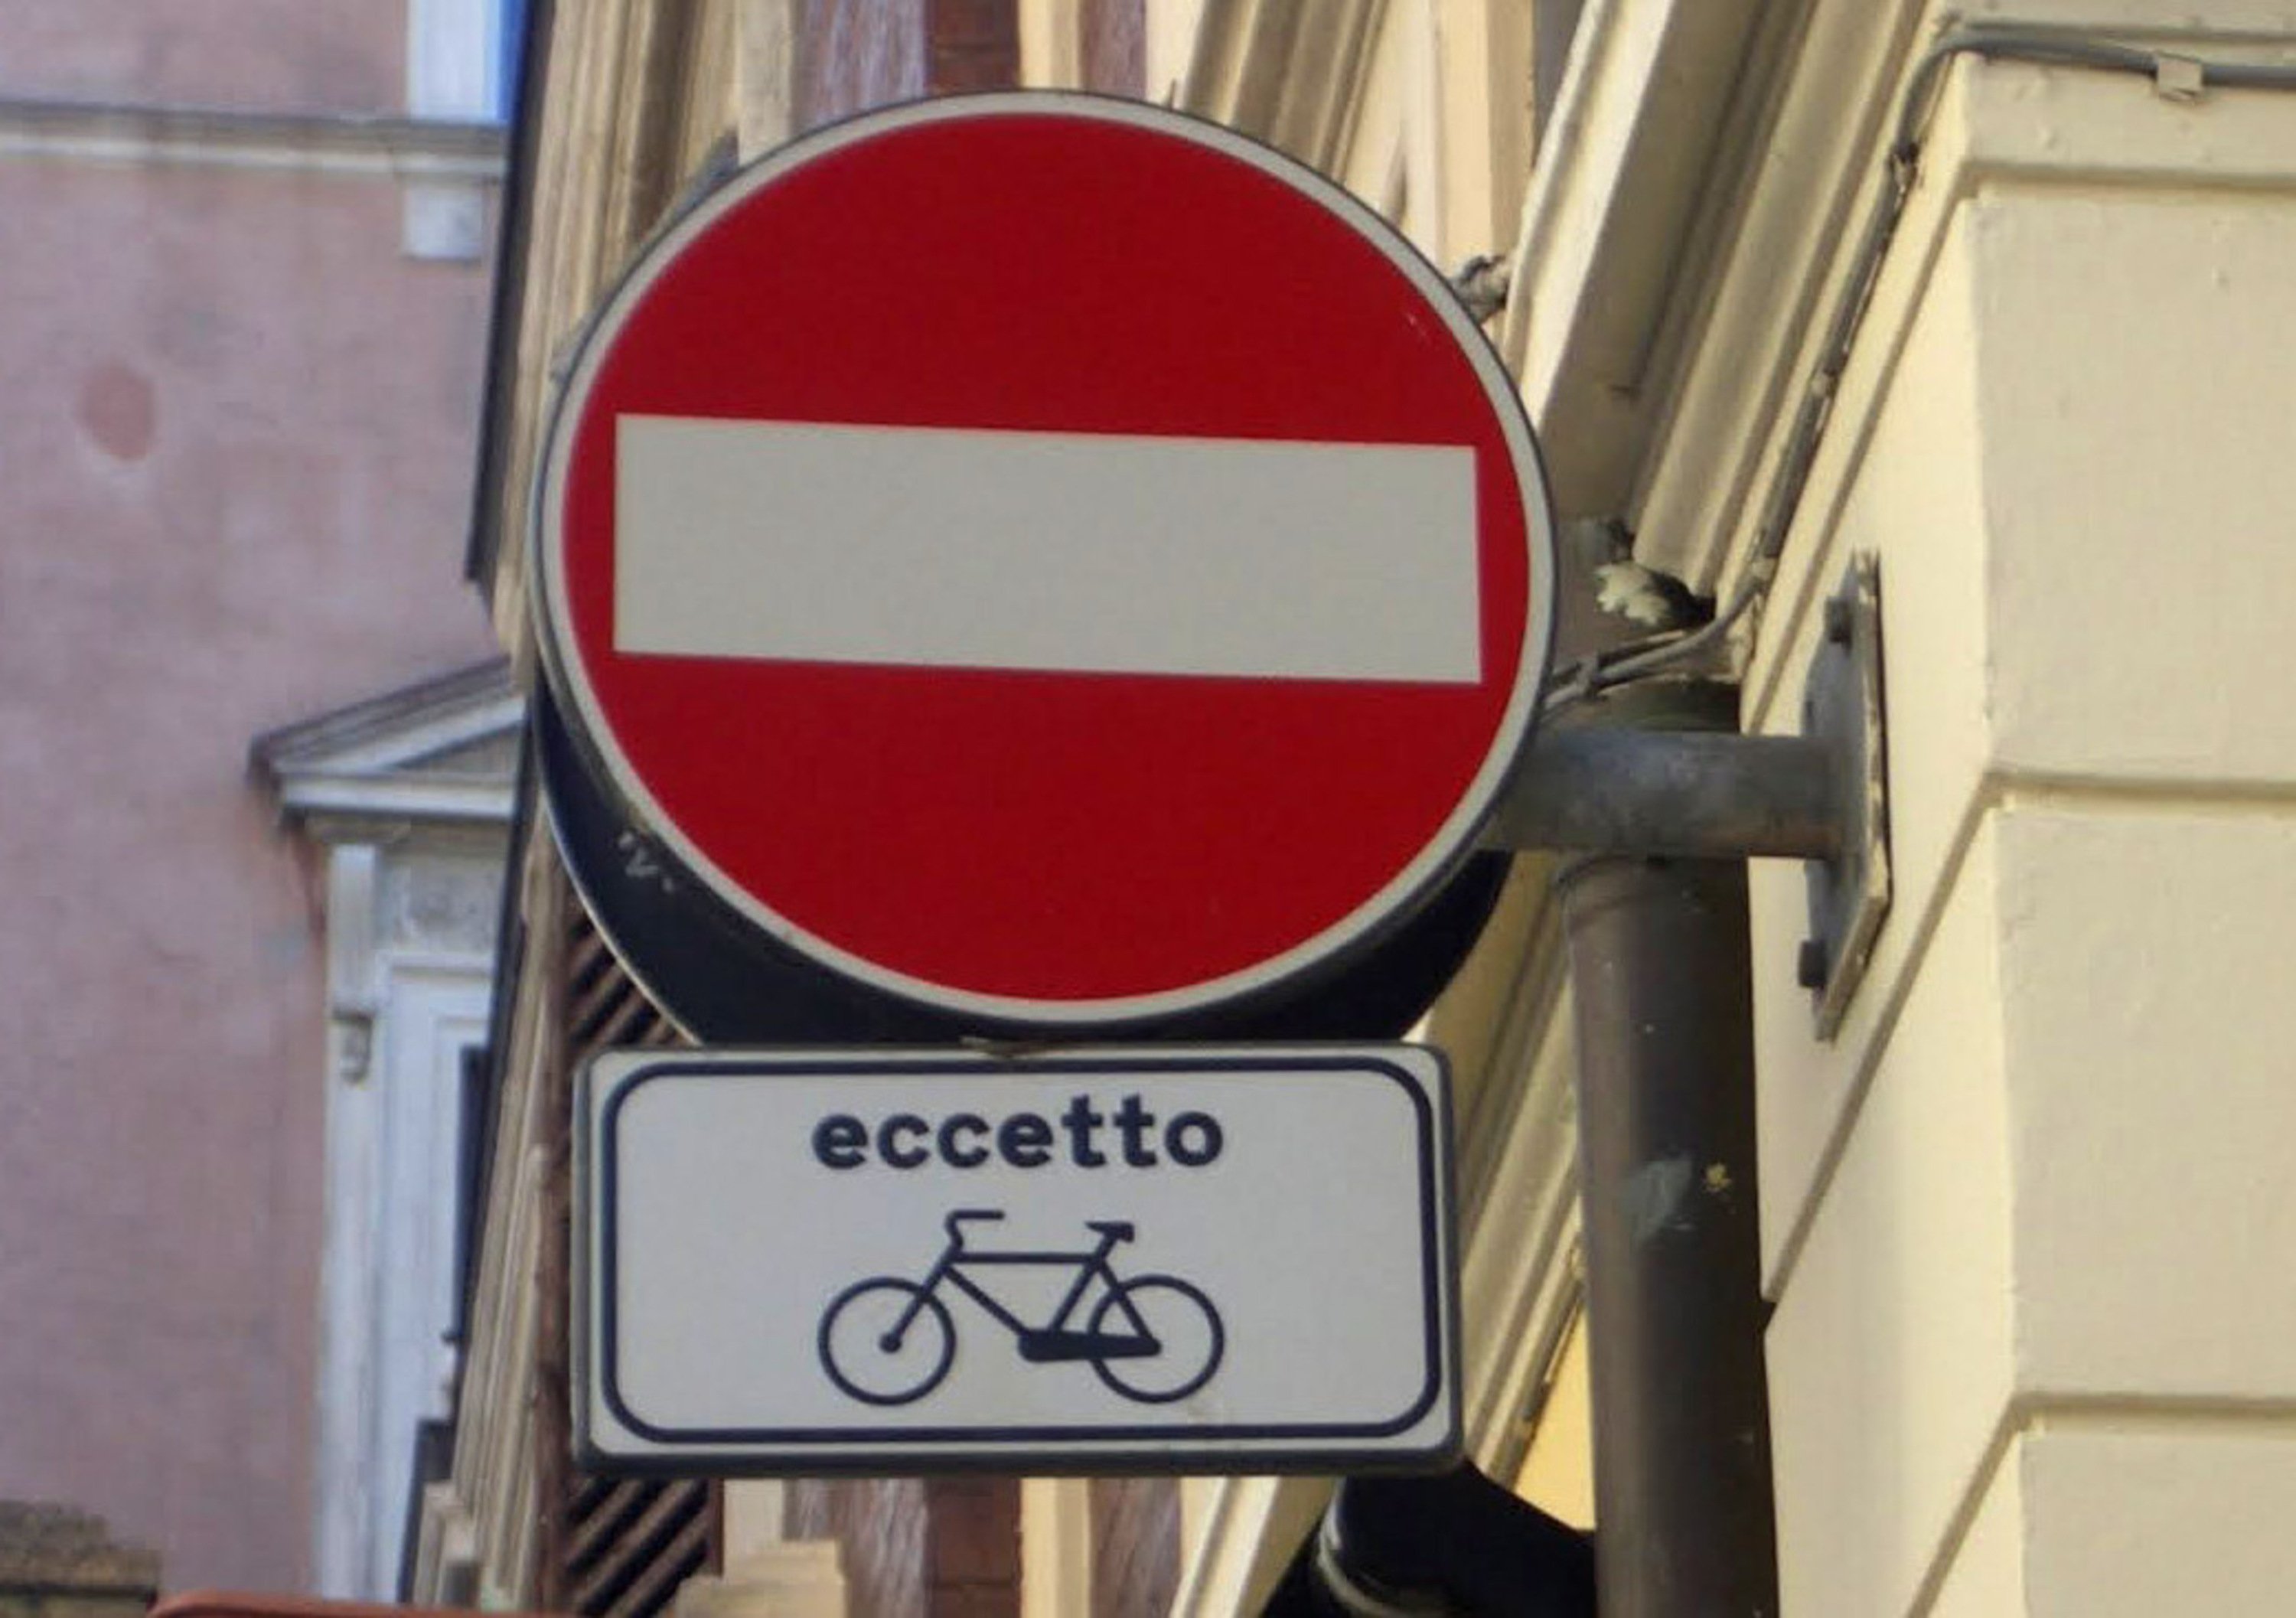 Nico Cereghini: &ldquo;Le bici in senso vietato&rdquo;